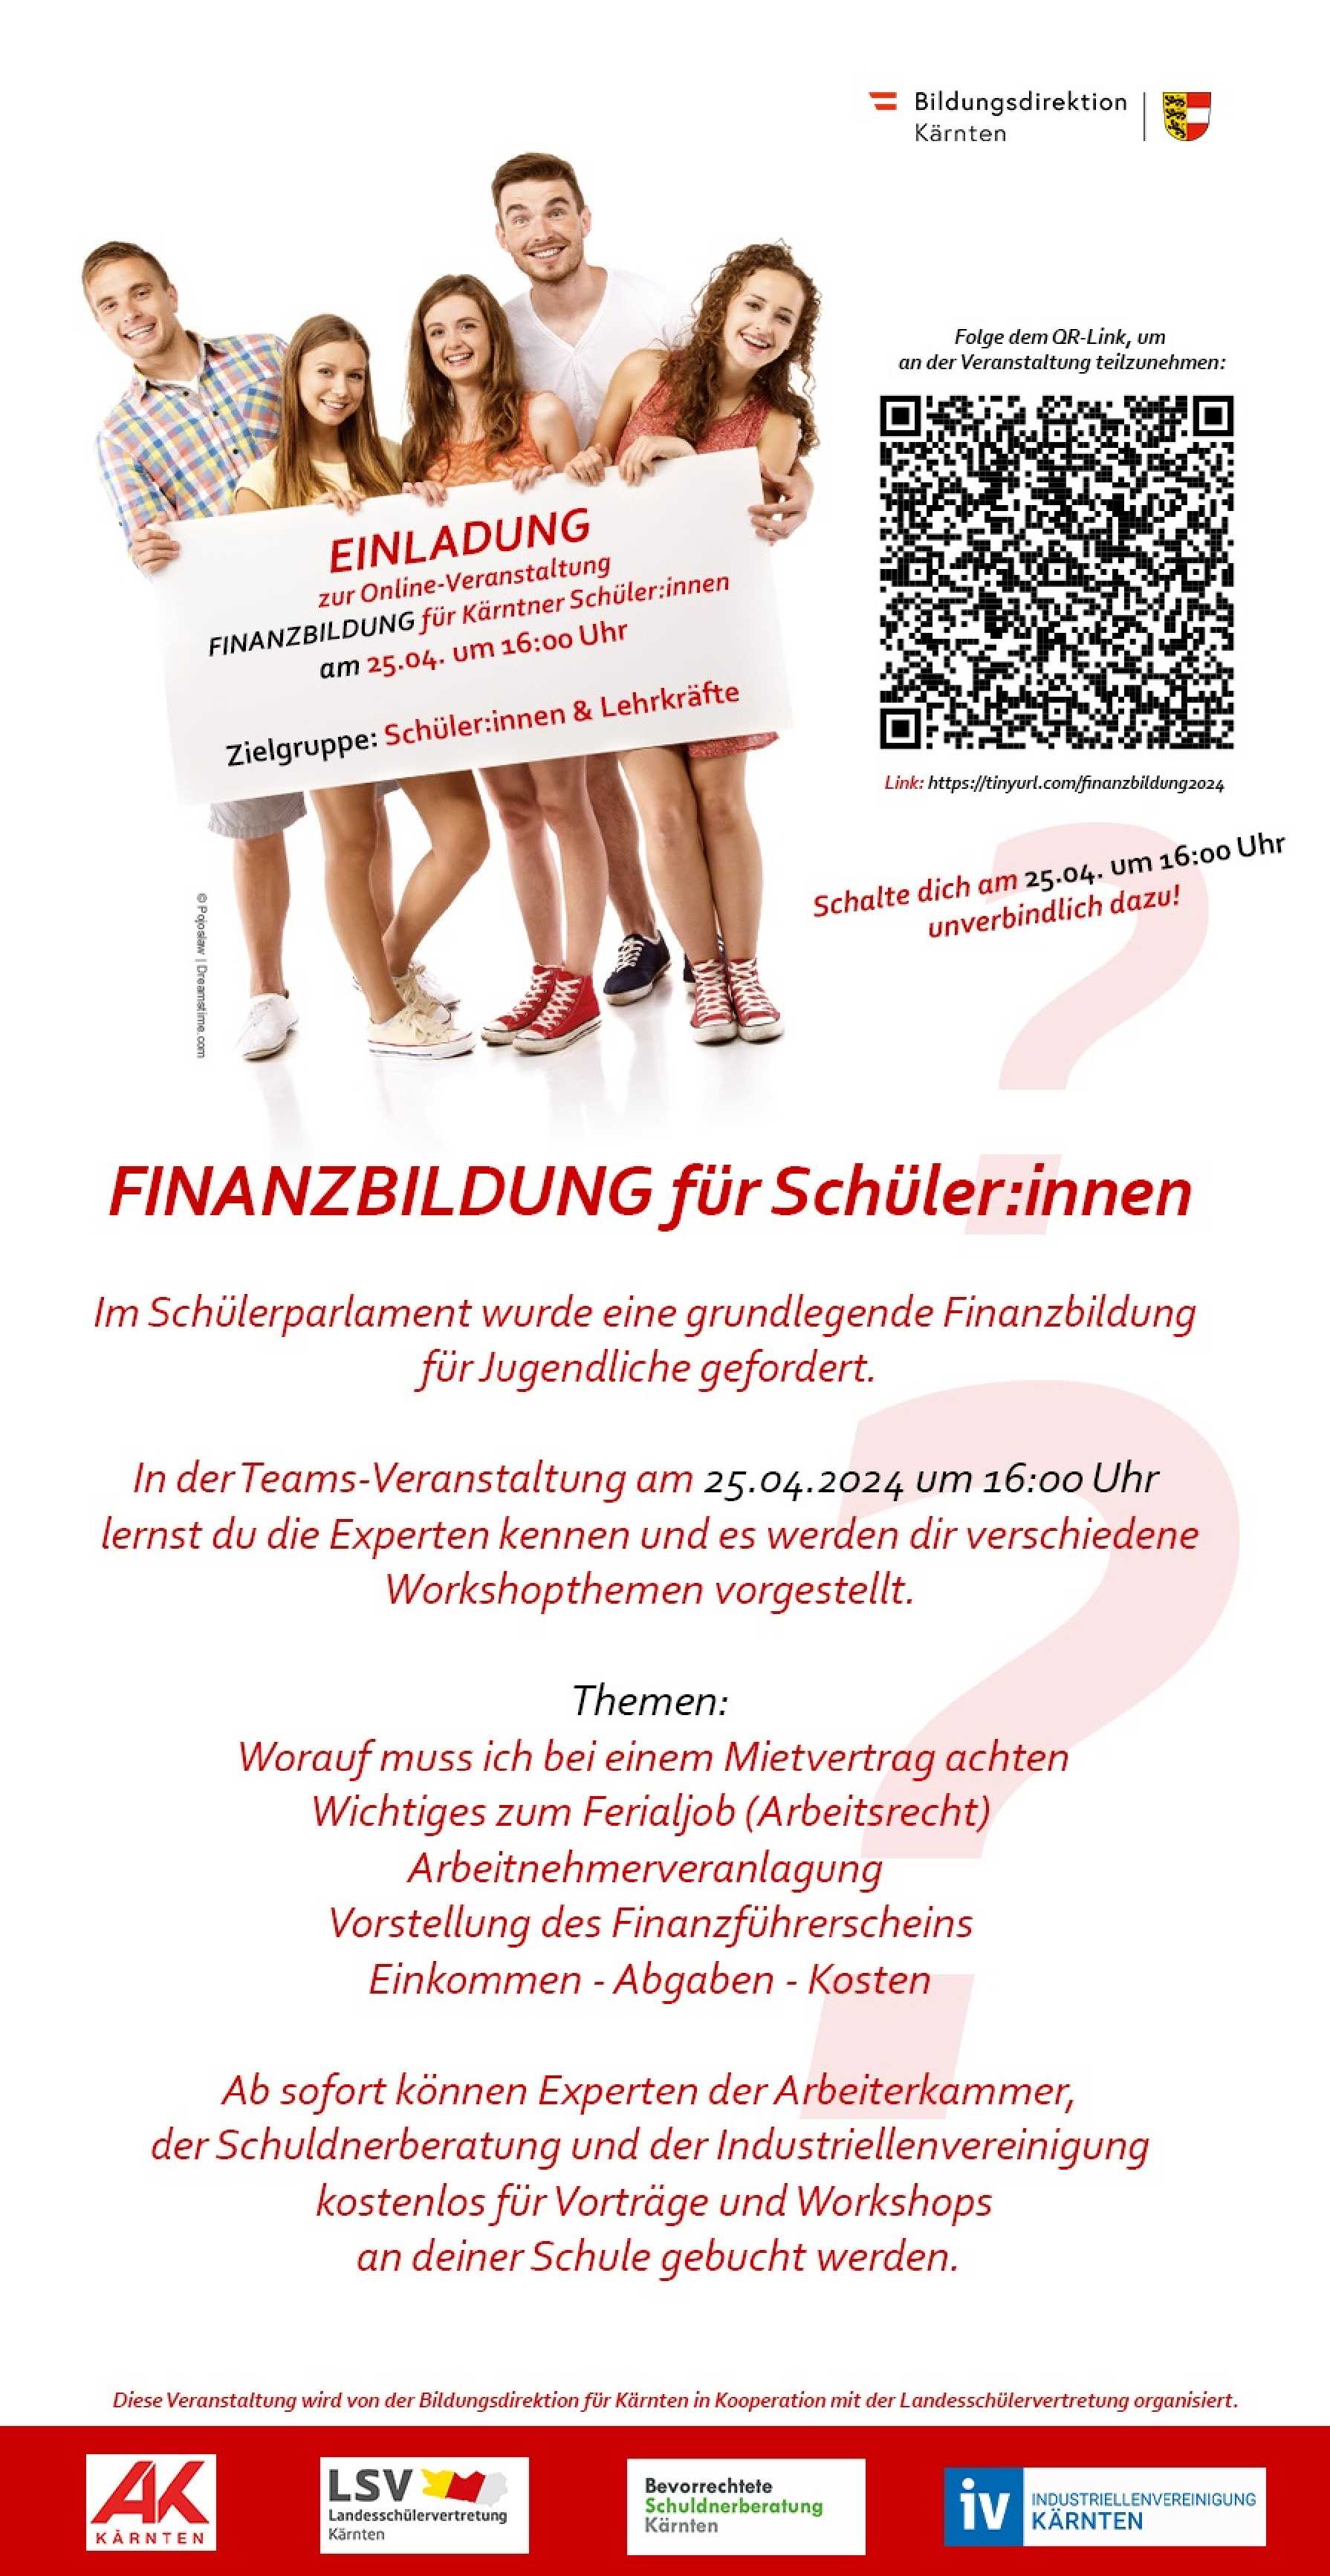 Finanzbildung für Schüler:innen  Diese Veranstaltung wird von der Bildungsdirektion für Kärnten in Kooperation mit der Landeschülervertretung organisiert.